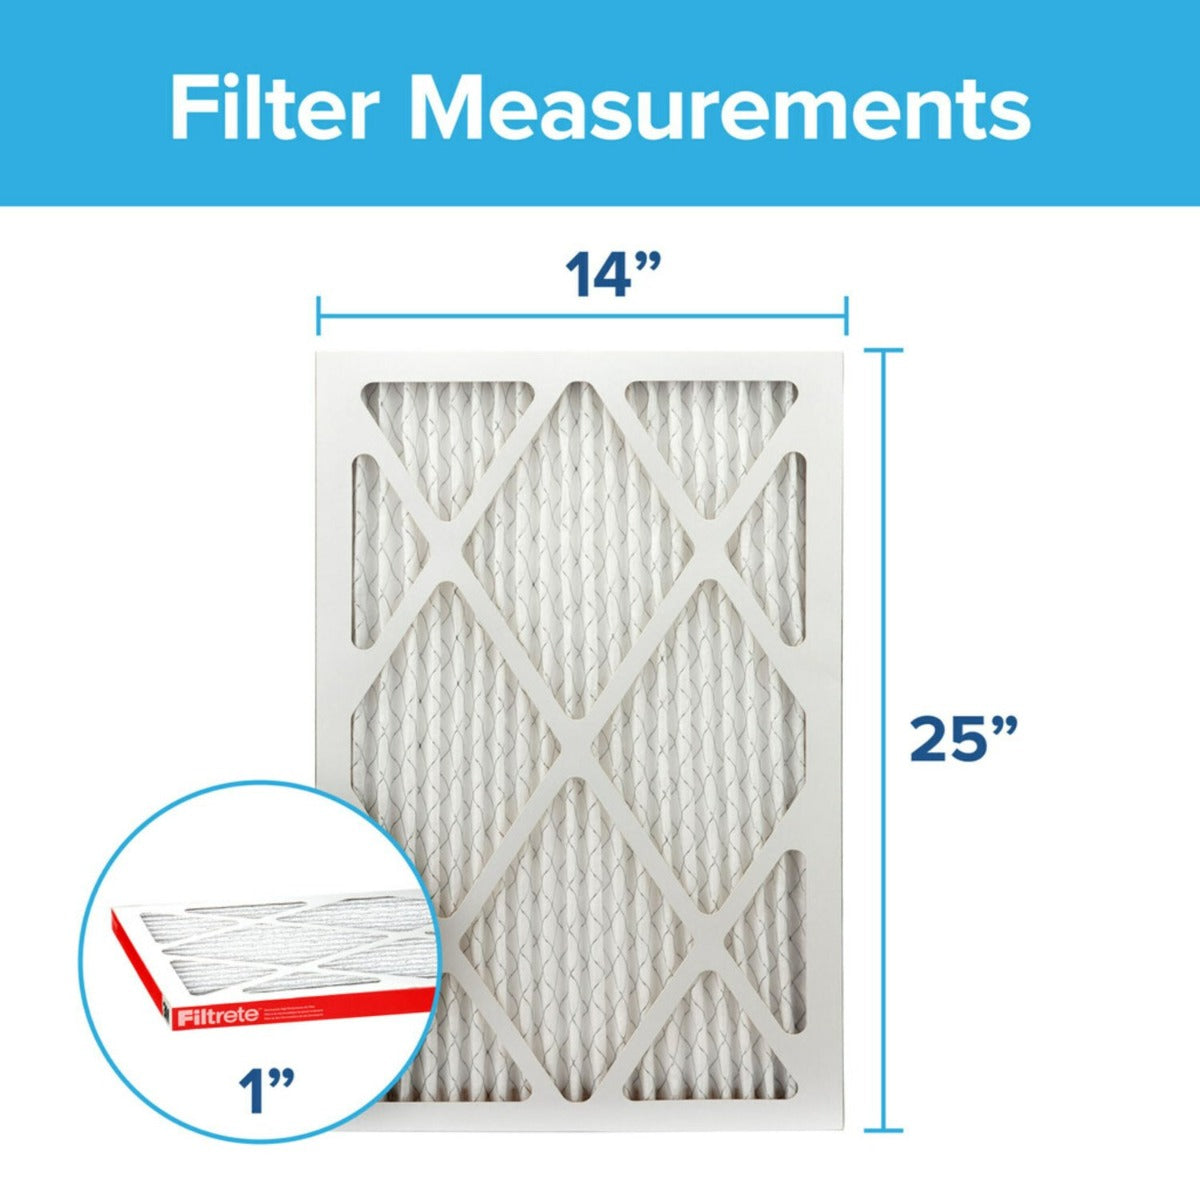 3M Filtrete 1000 Micro Allergen & Dust Defense Filter - 14x25x1 (4-Pack)